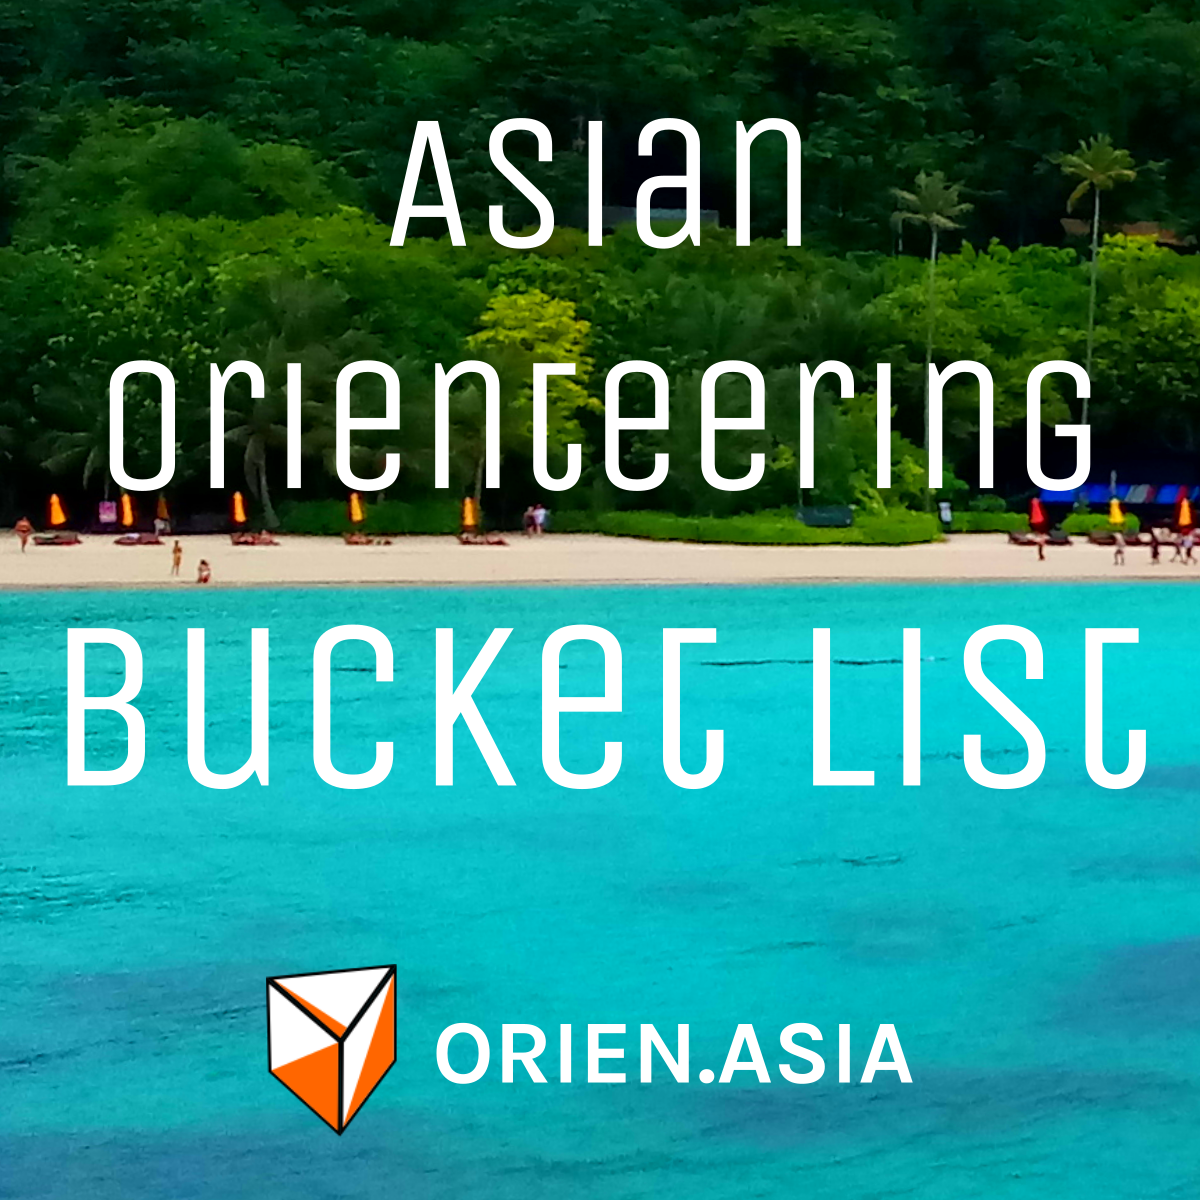 Asia orienteering bucket list - updated for 2021